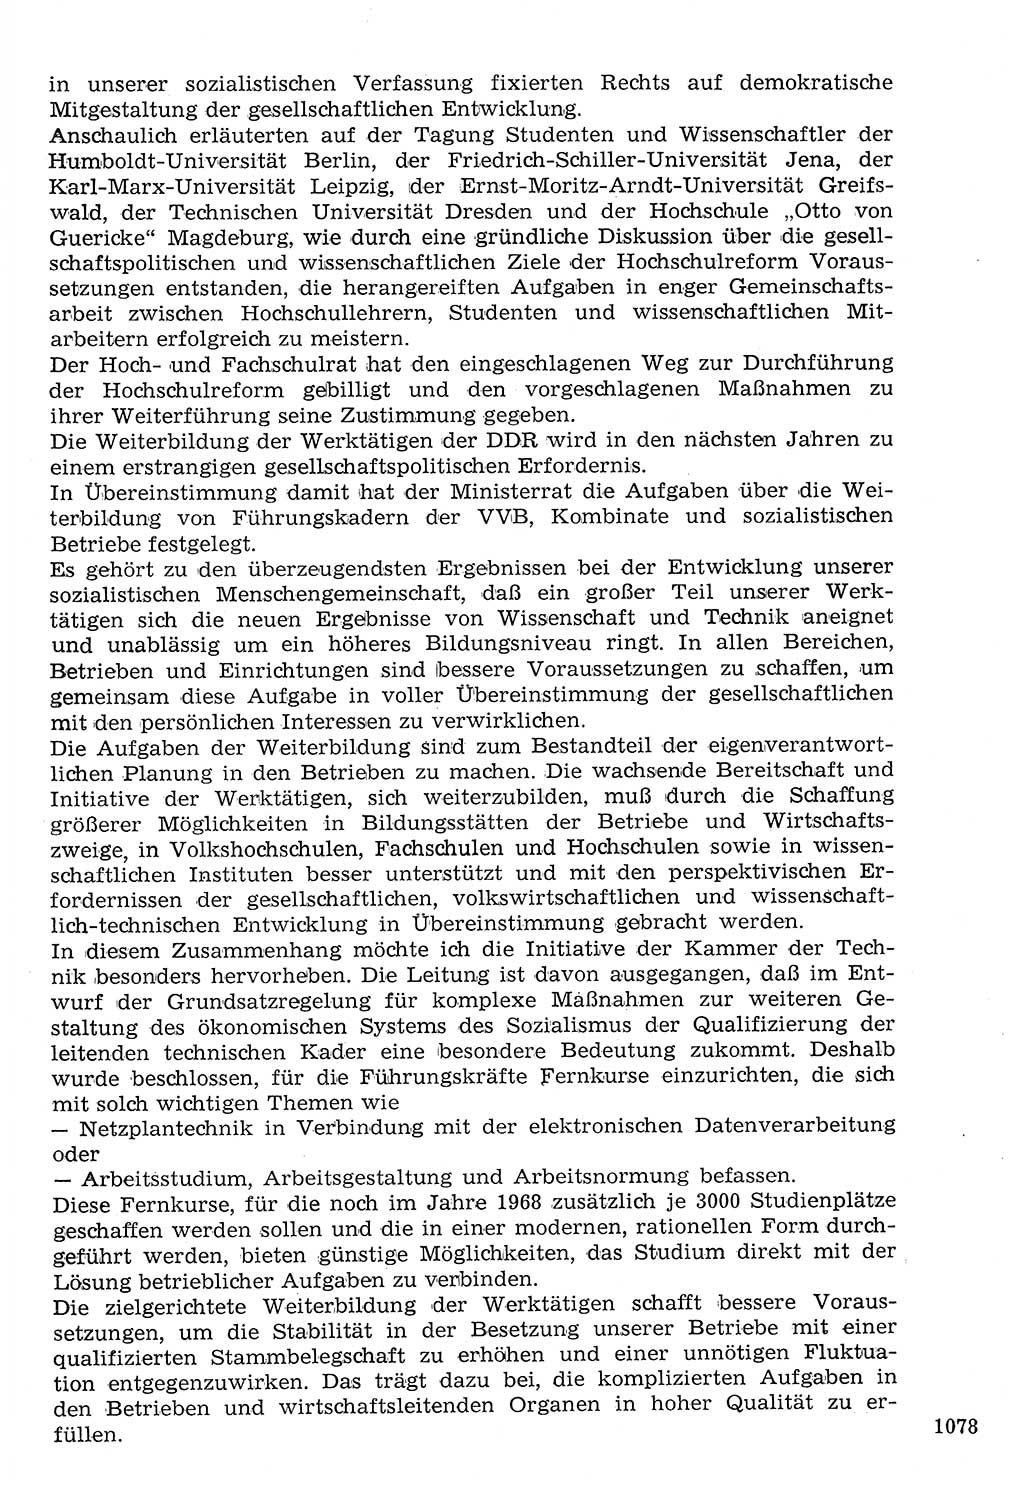 Staat und Recht (StuR), 17. Jahrgang [Deutsche Demokratische Republik (DDR)] 1968, Seite 1078 (StuR DDR 1968, S. 1078)